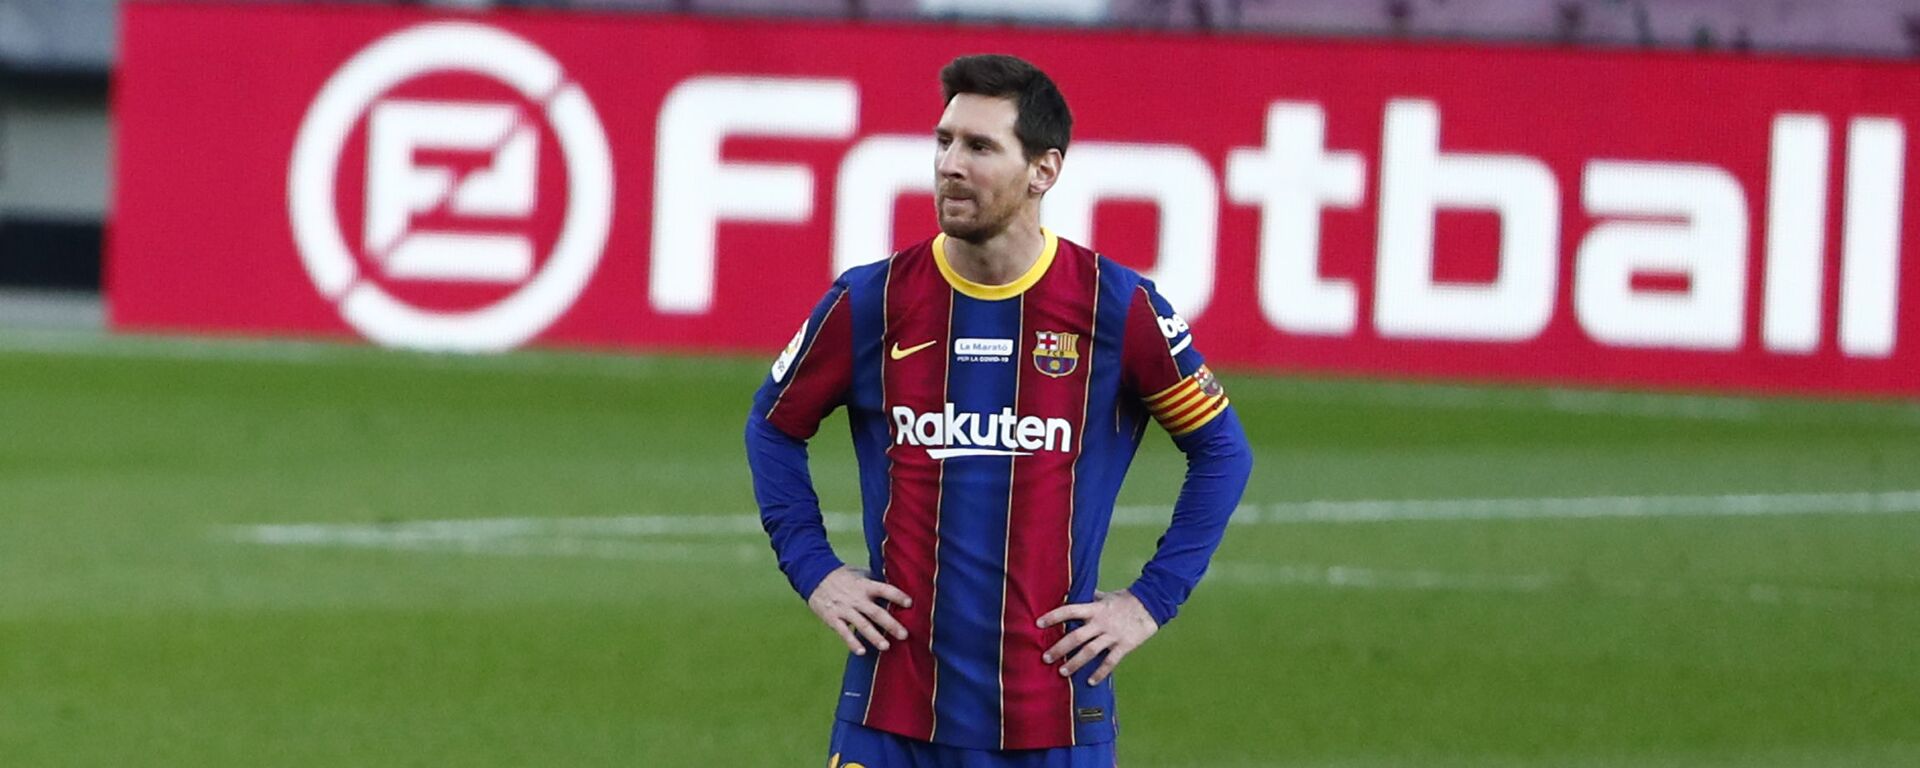 Leo Messi, futbolista argentino - اسپوتنیک افغانستان  , 1920, 14.07.2021